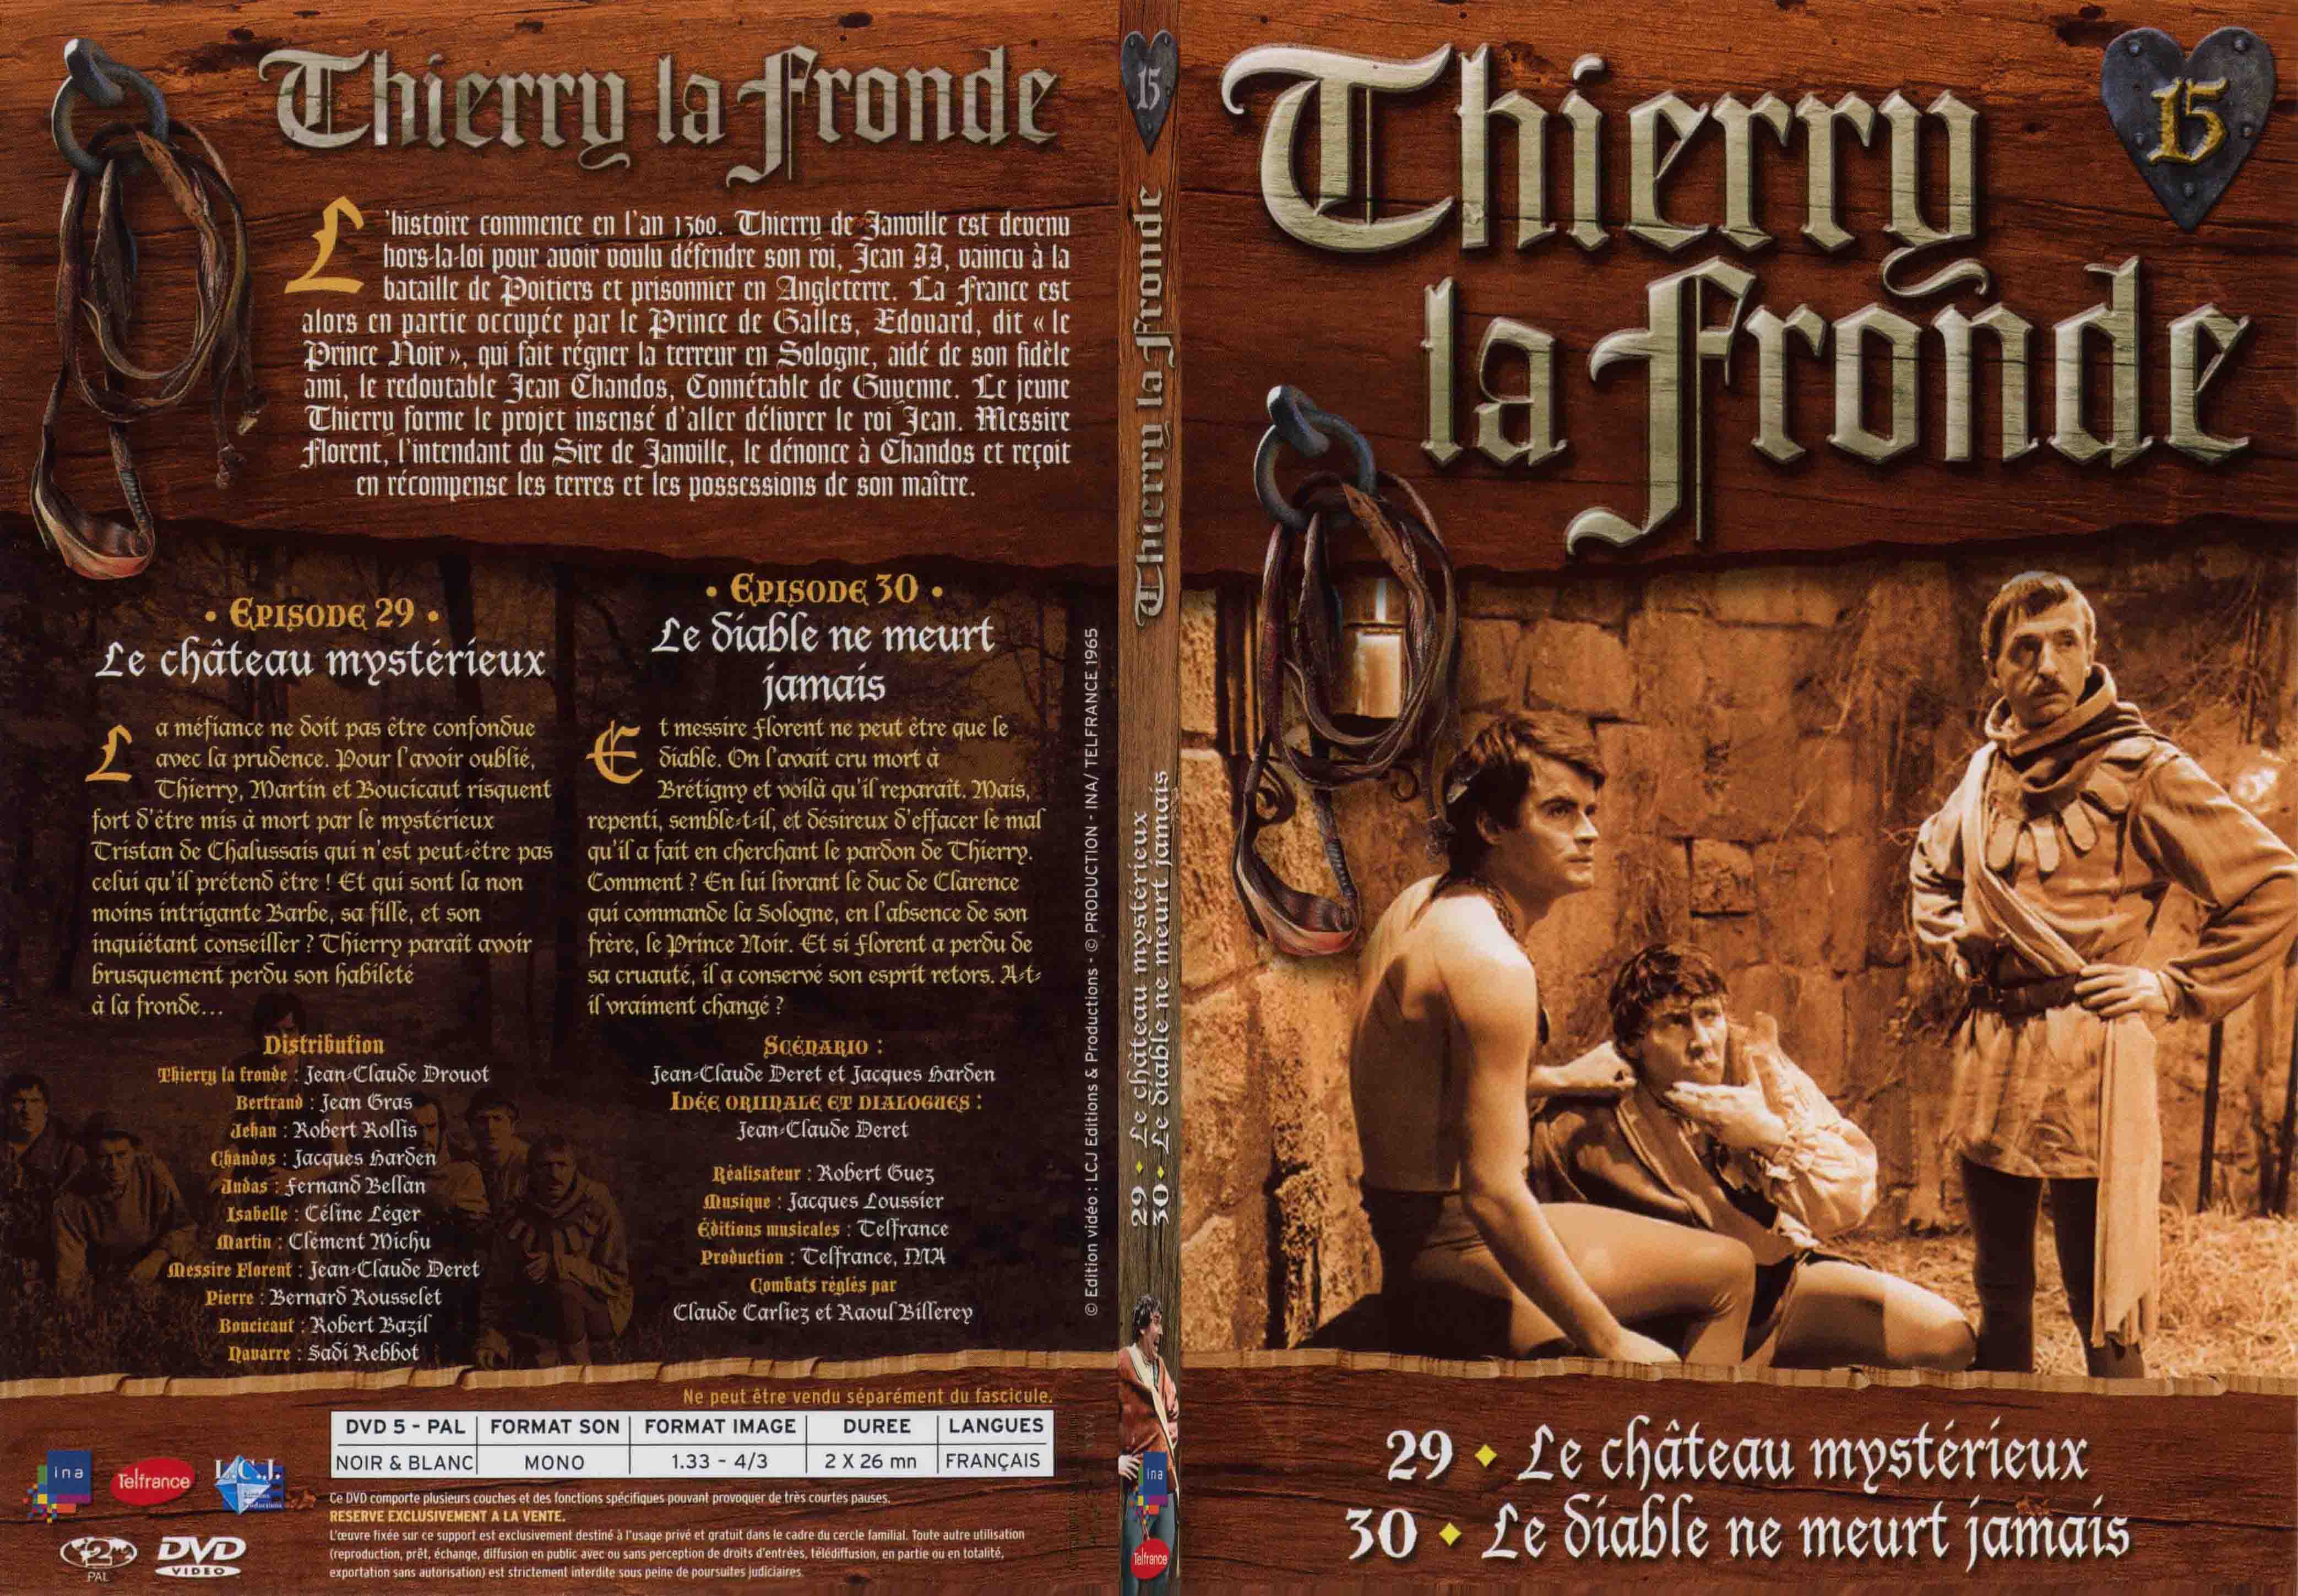 Jaquette DVD Thierry la Fronde vol 15 - SLIM